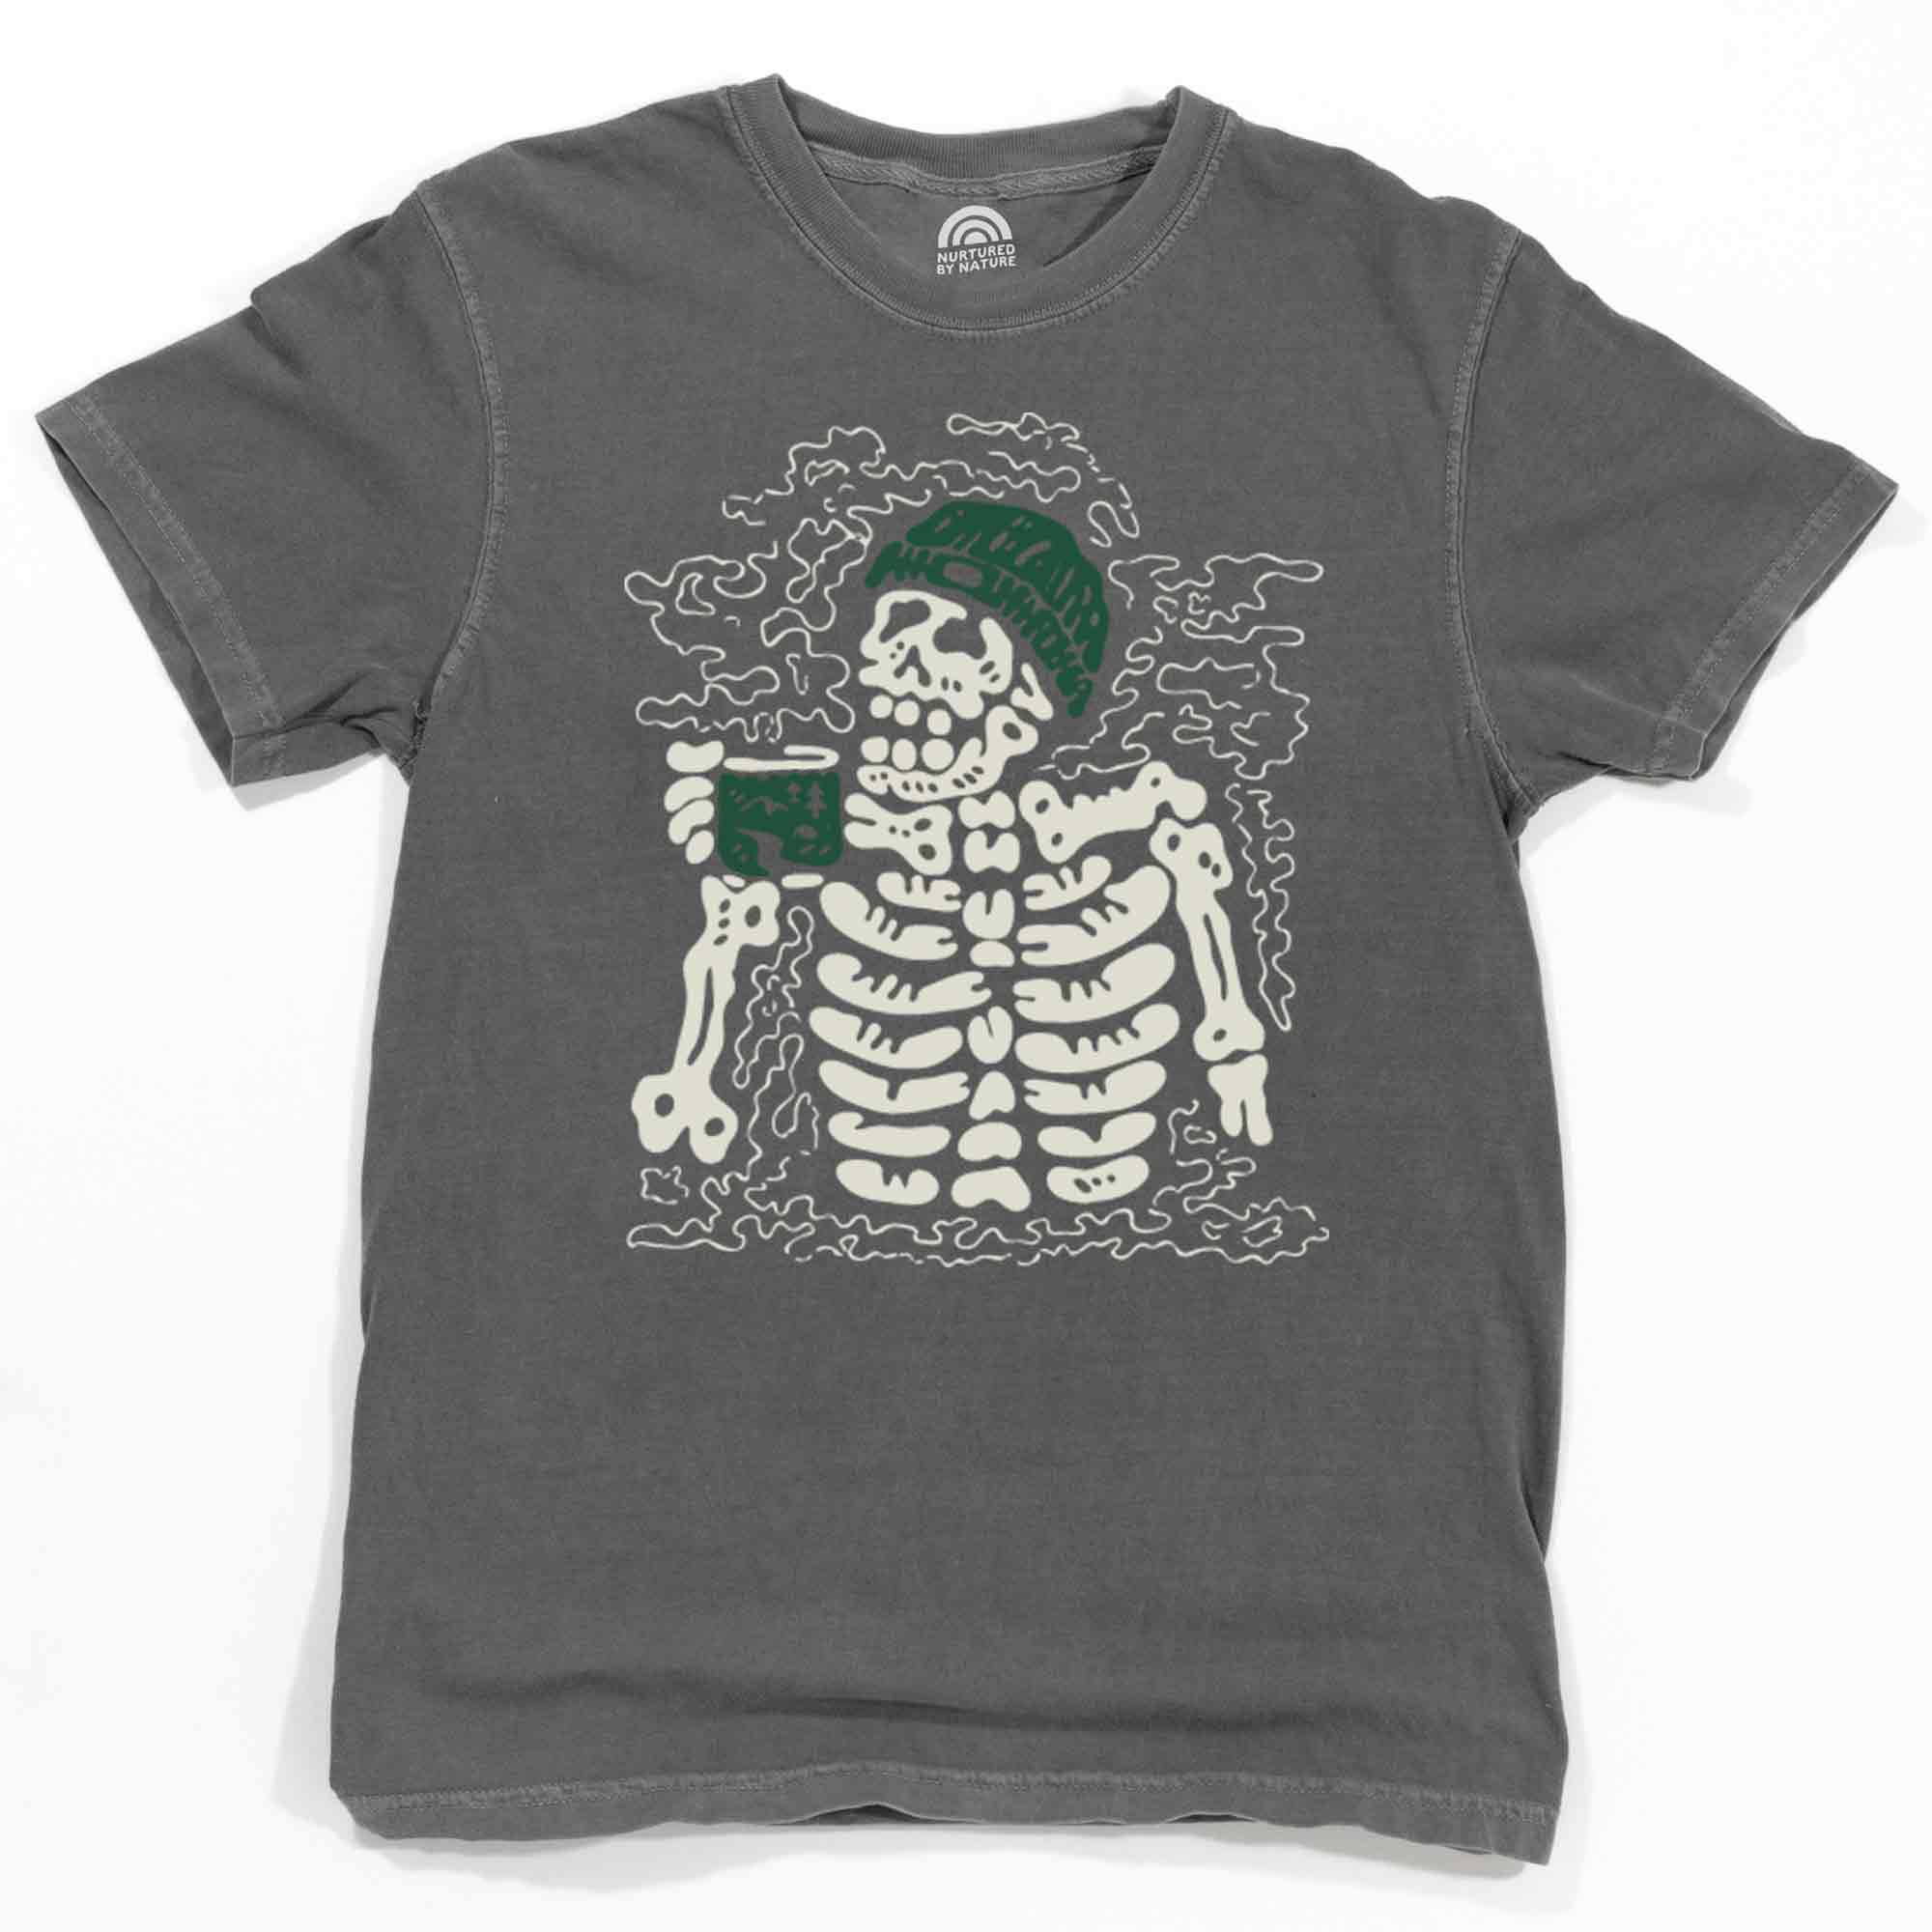 Skeleton Drinking Coffee T-Shirt